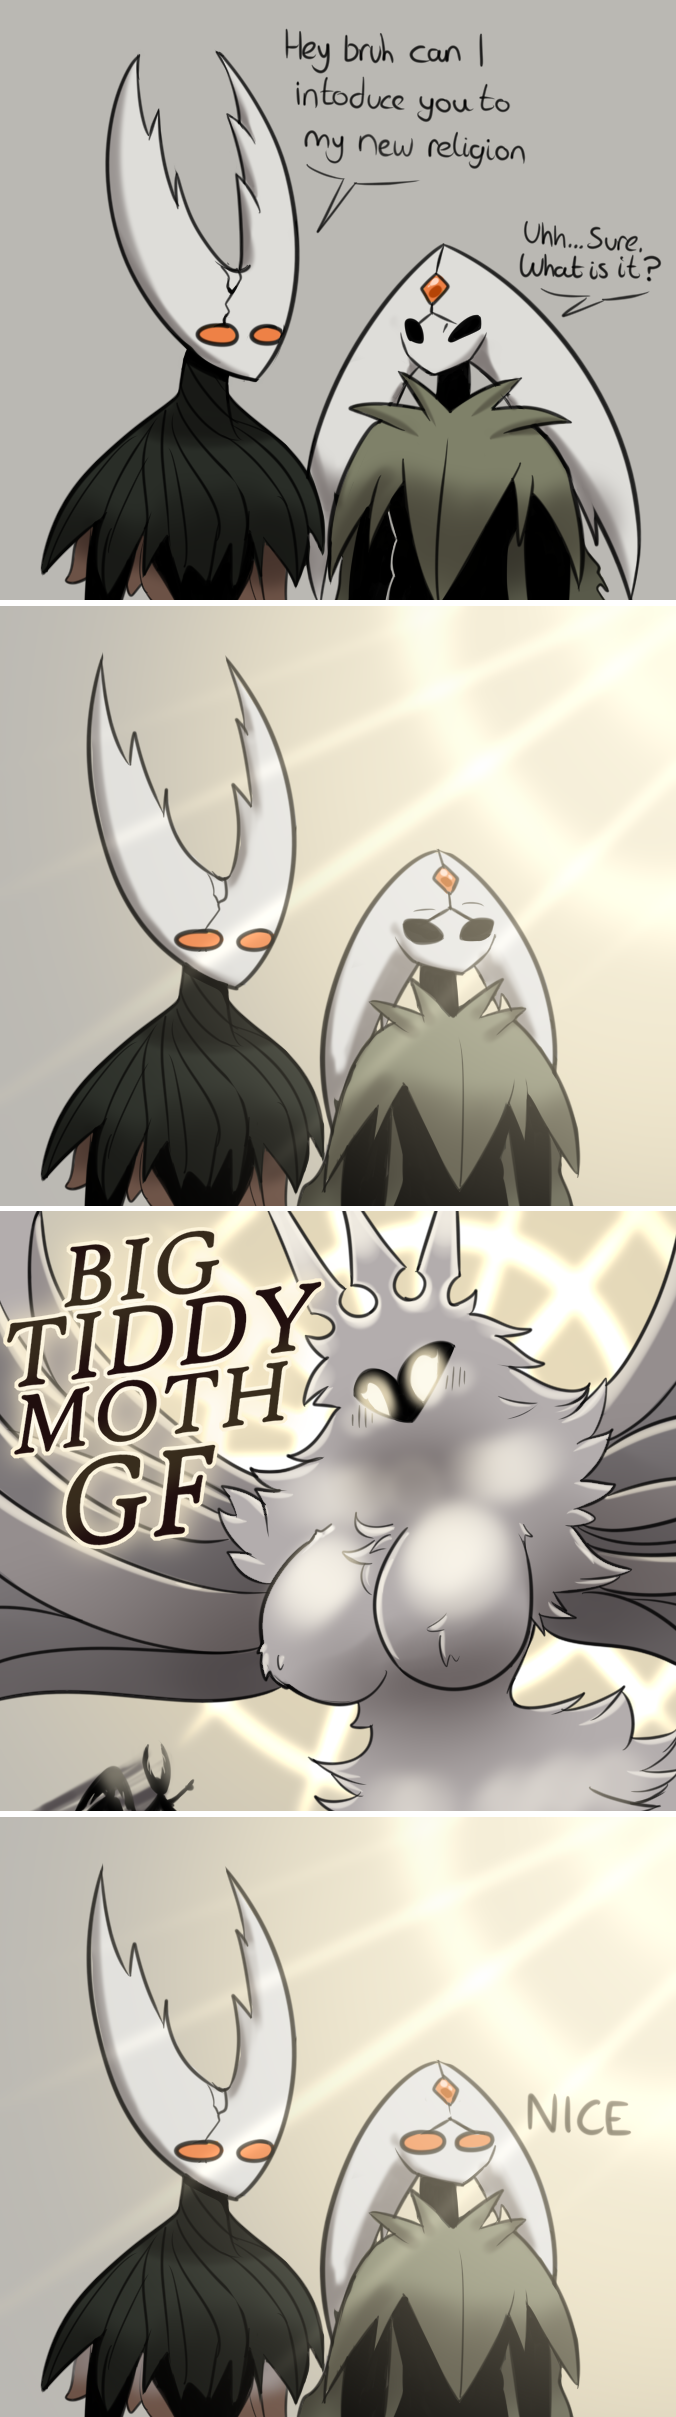 Big Tiddy Moth GF. 